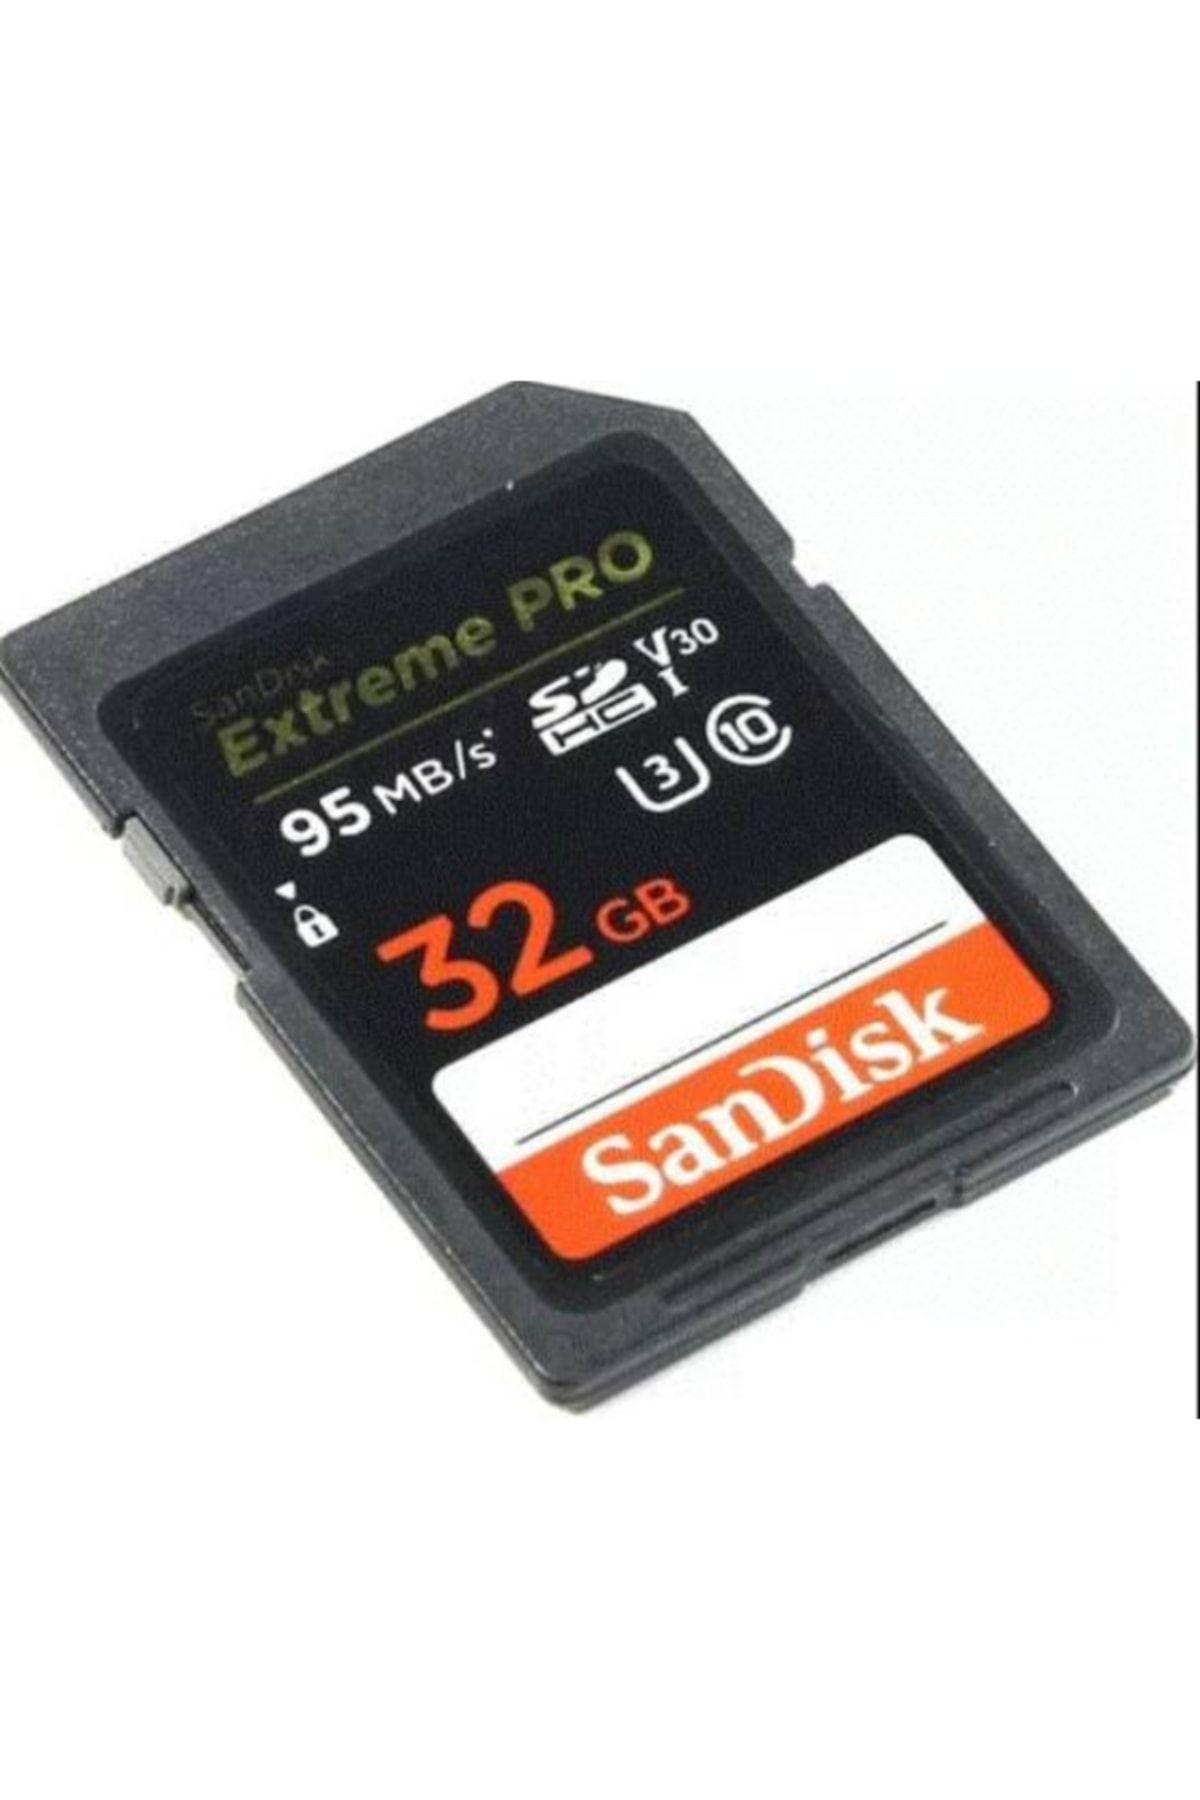 Sandisk 32gb Sd Kart 95mb/s Ext Pro C10